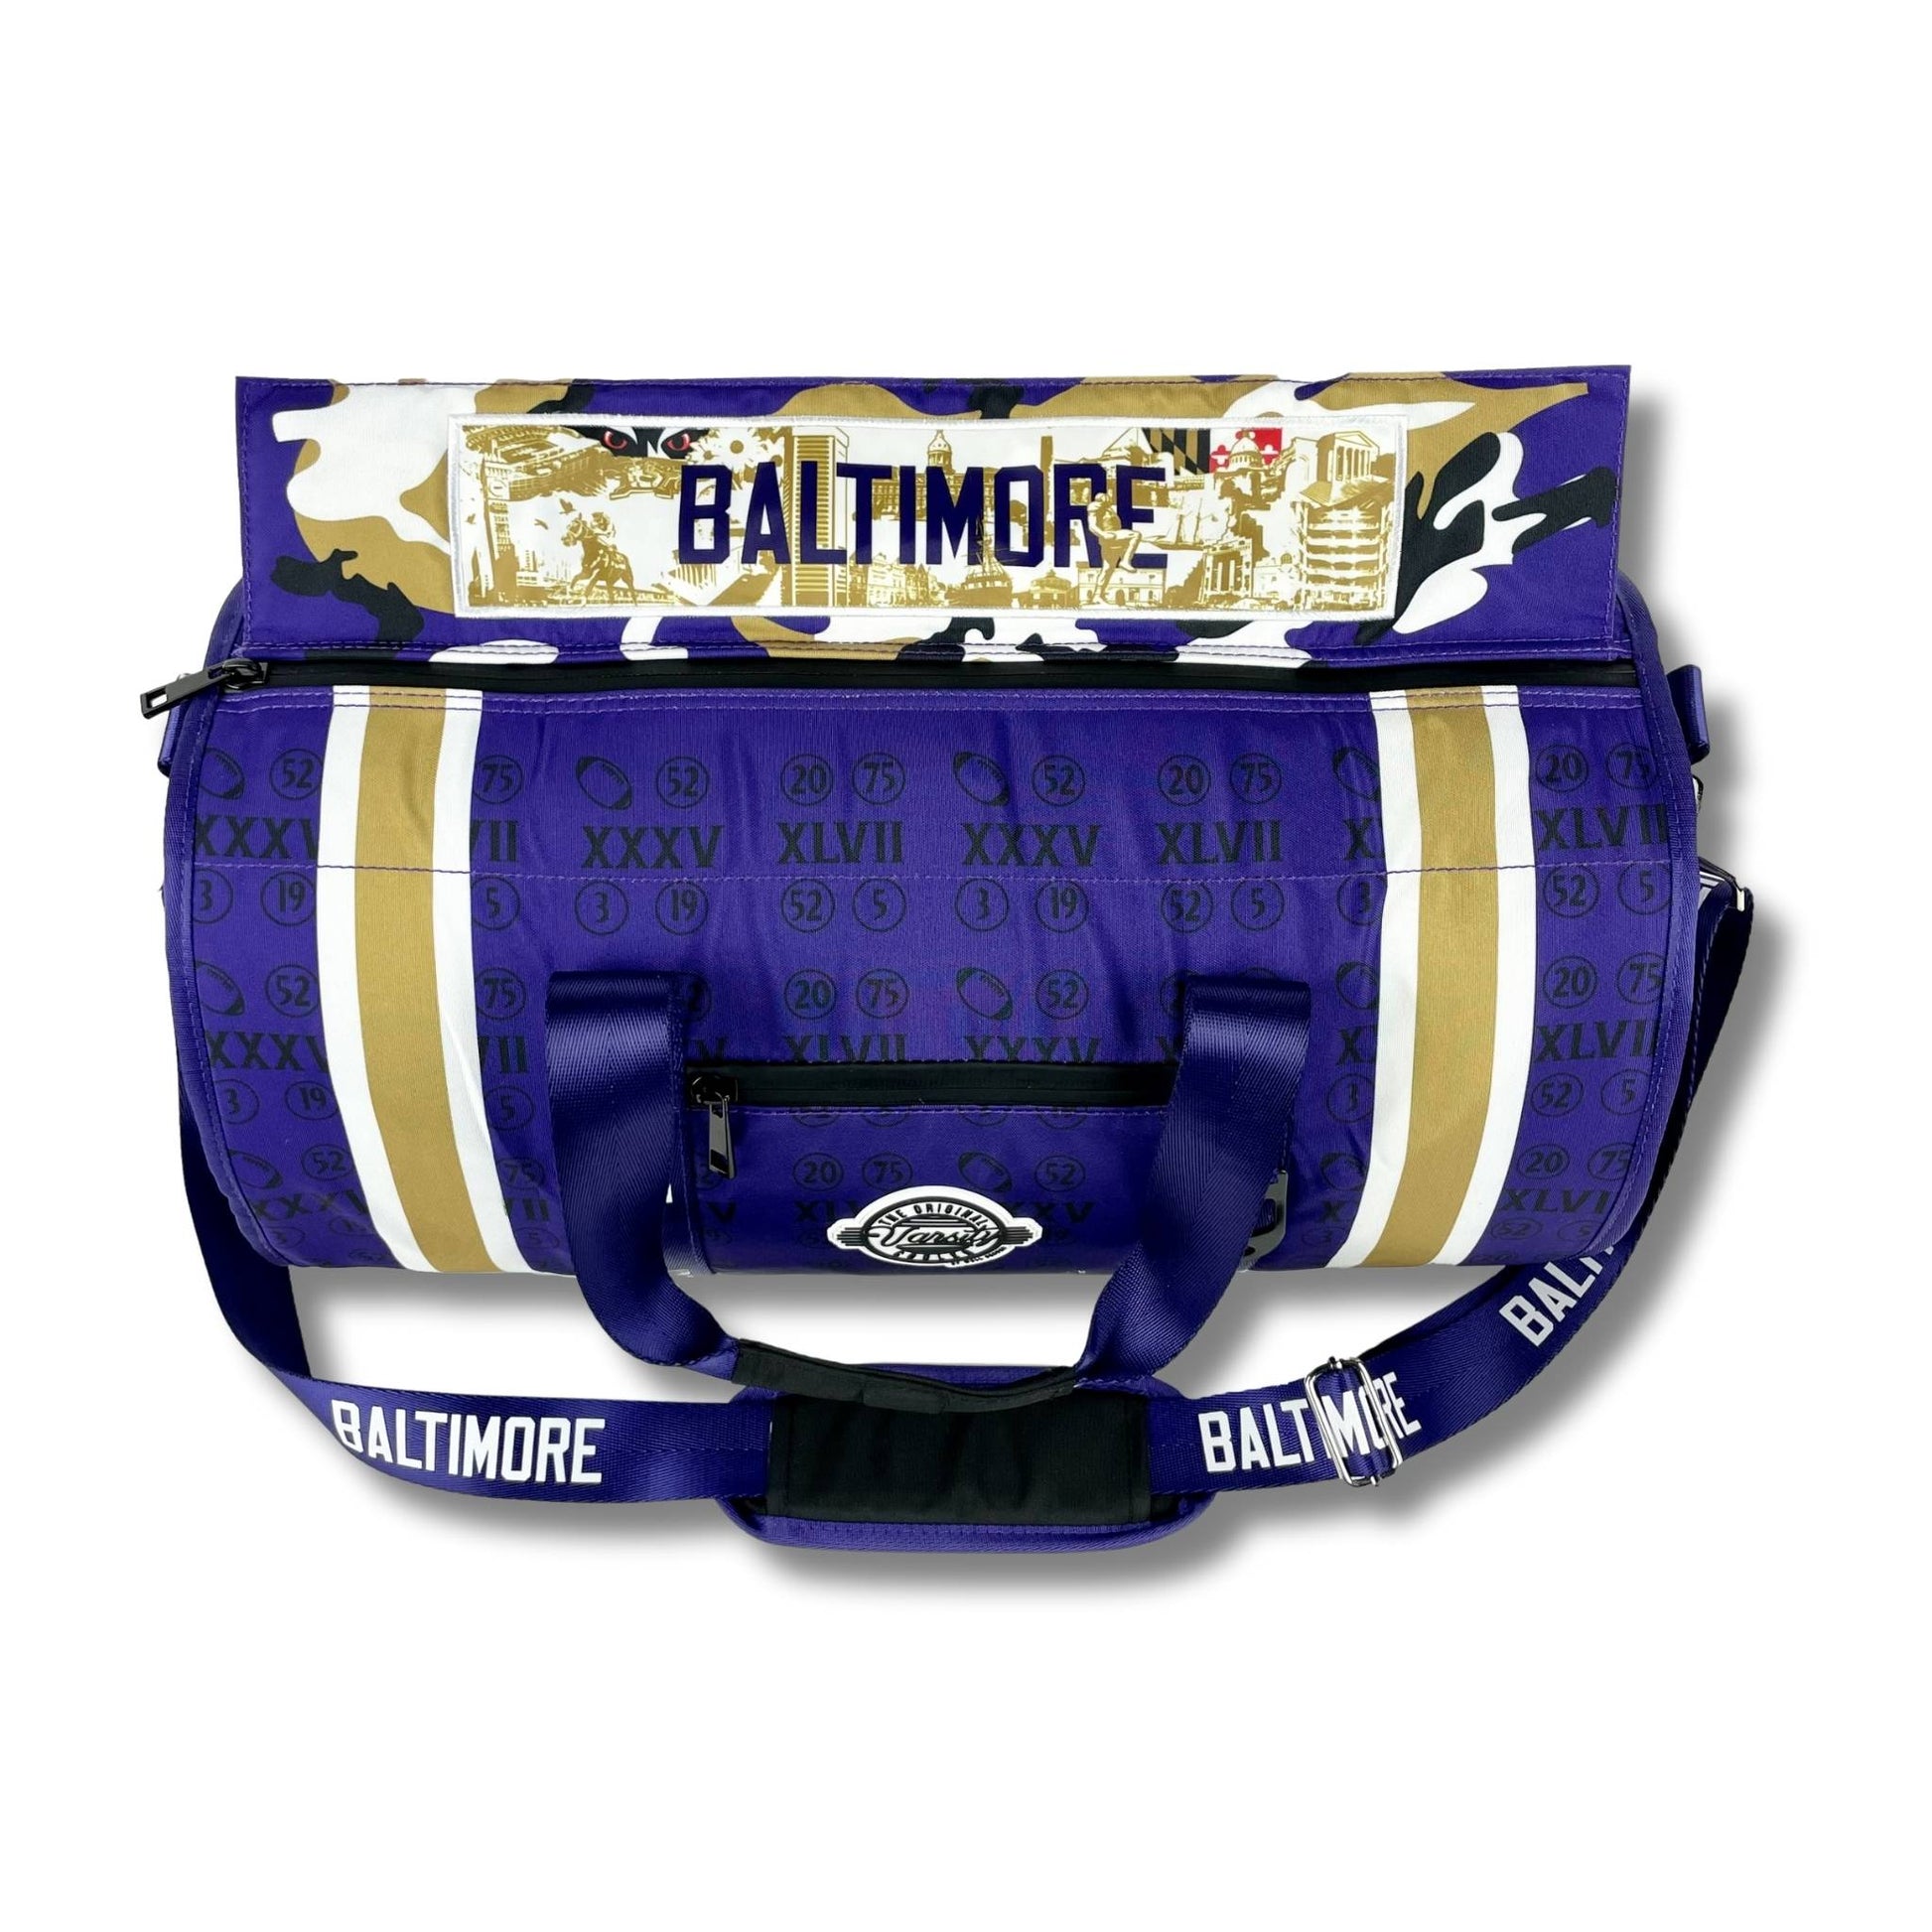 Baltimore Cooler